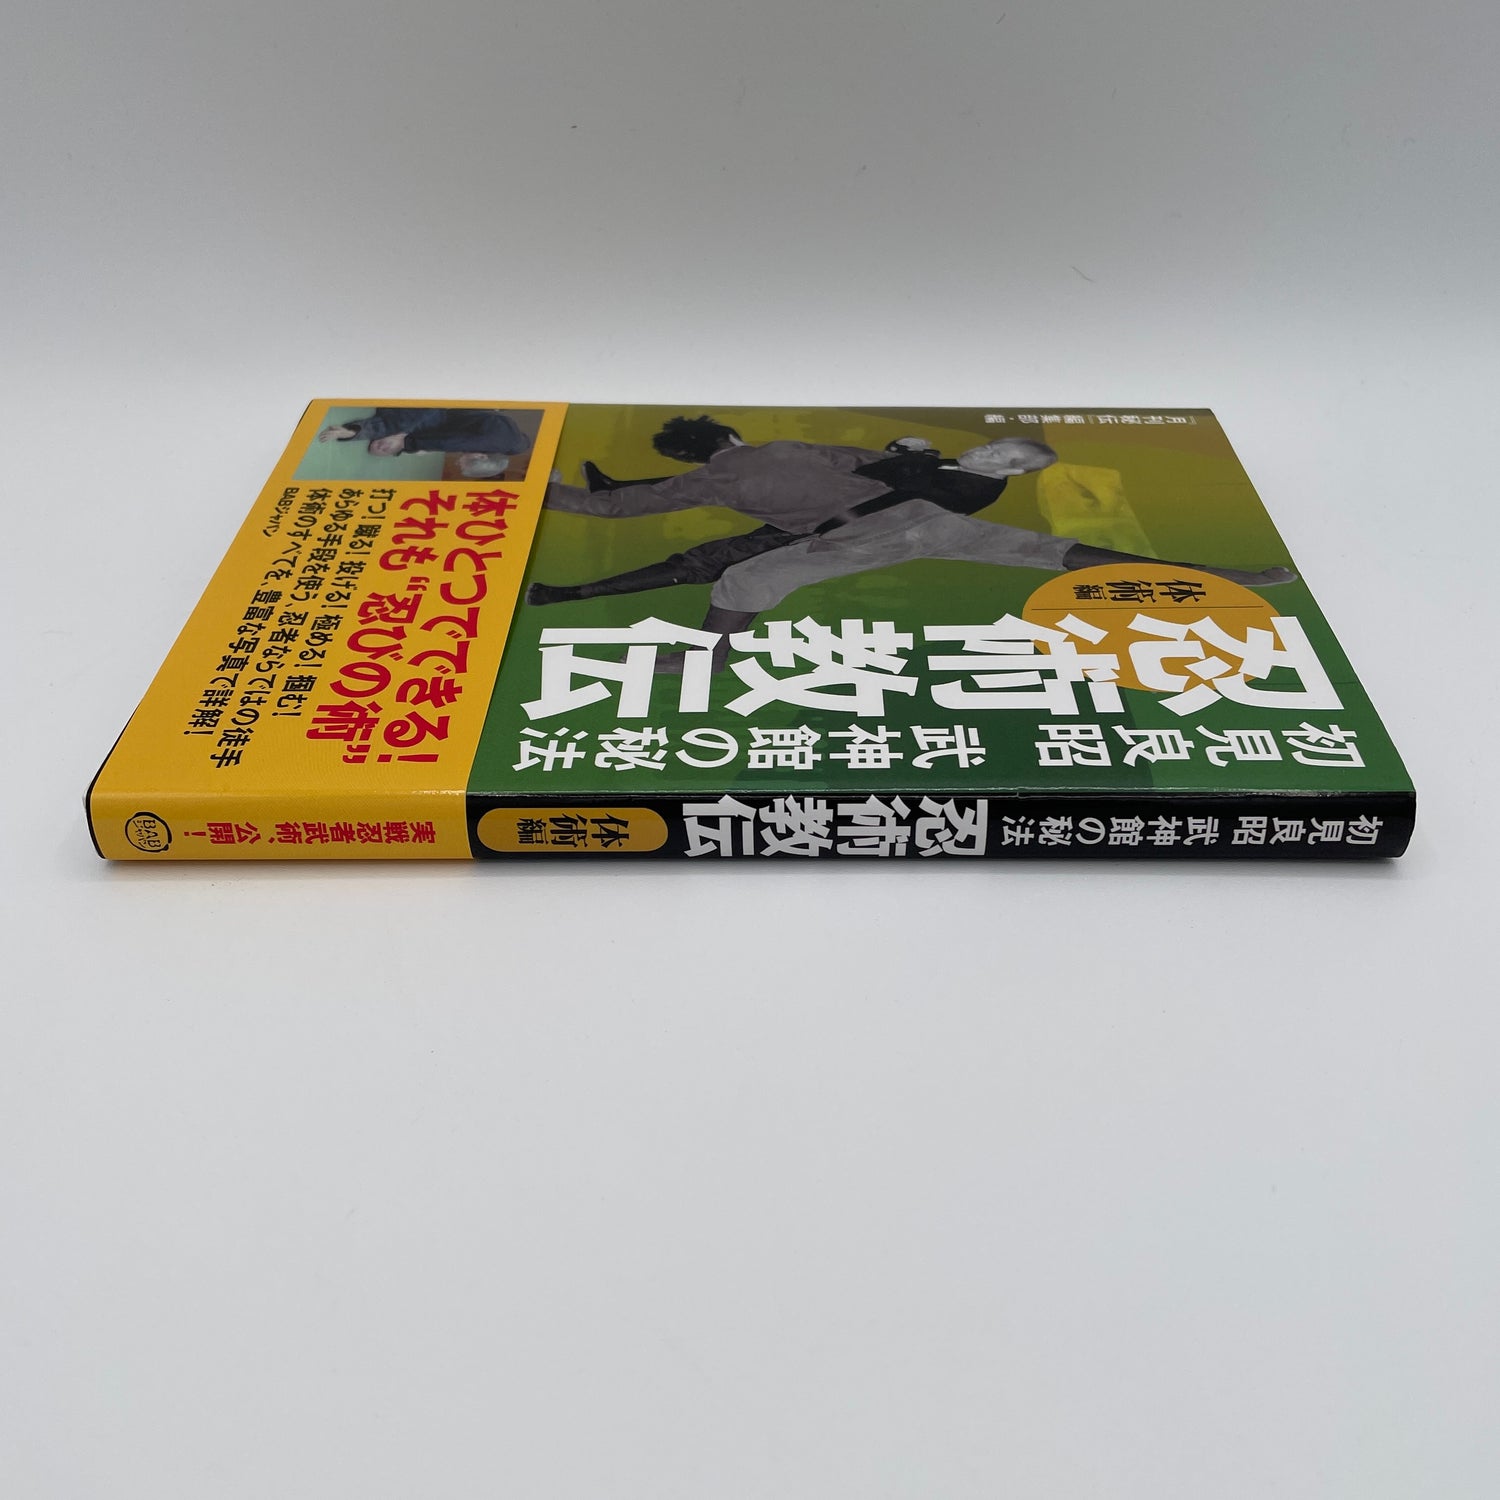 Ninjutsu Kyoden Book 2: Taijutsu by Masaaki Hatsumi